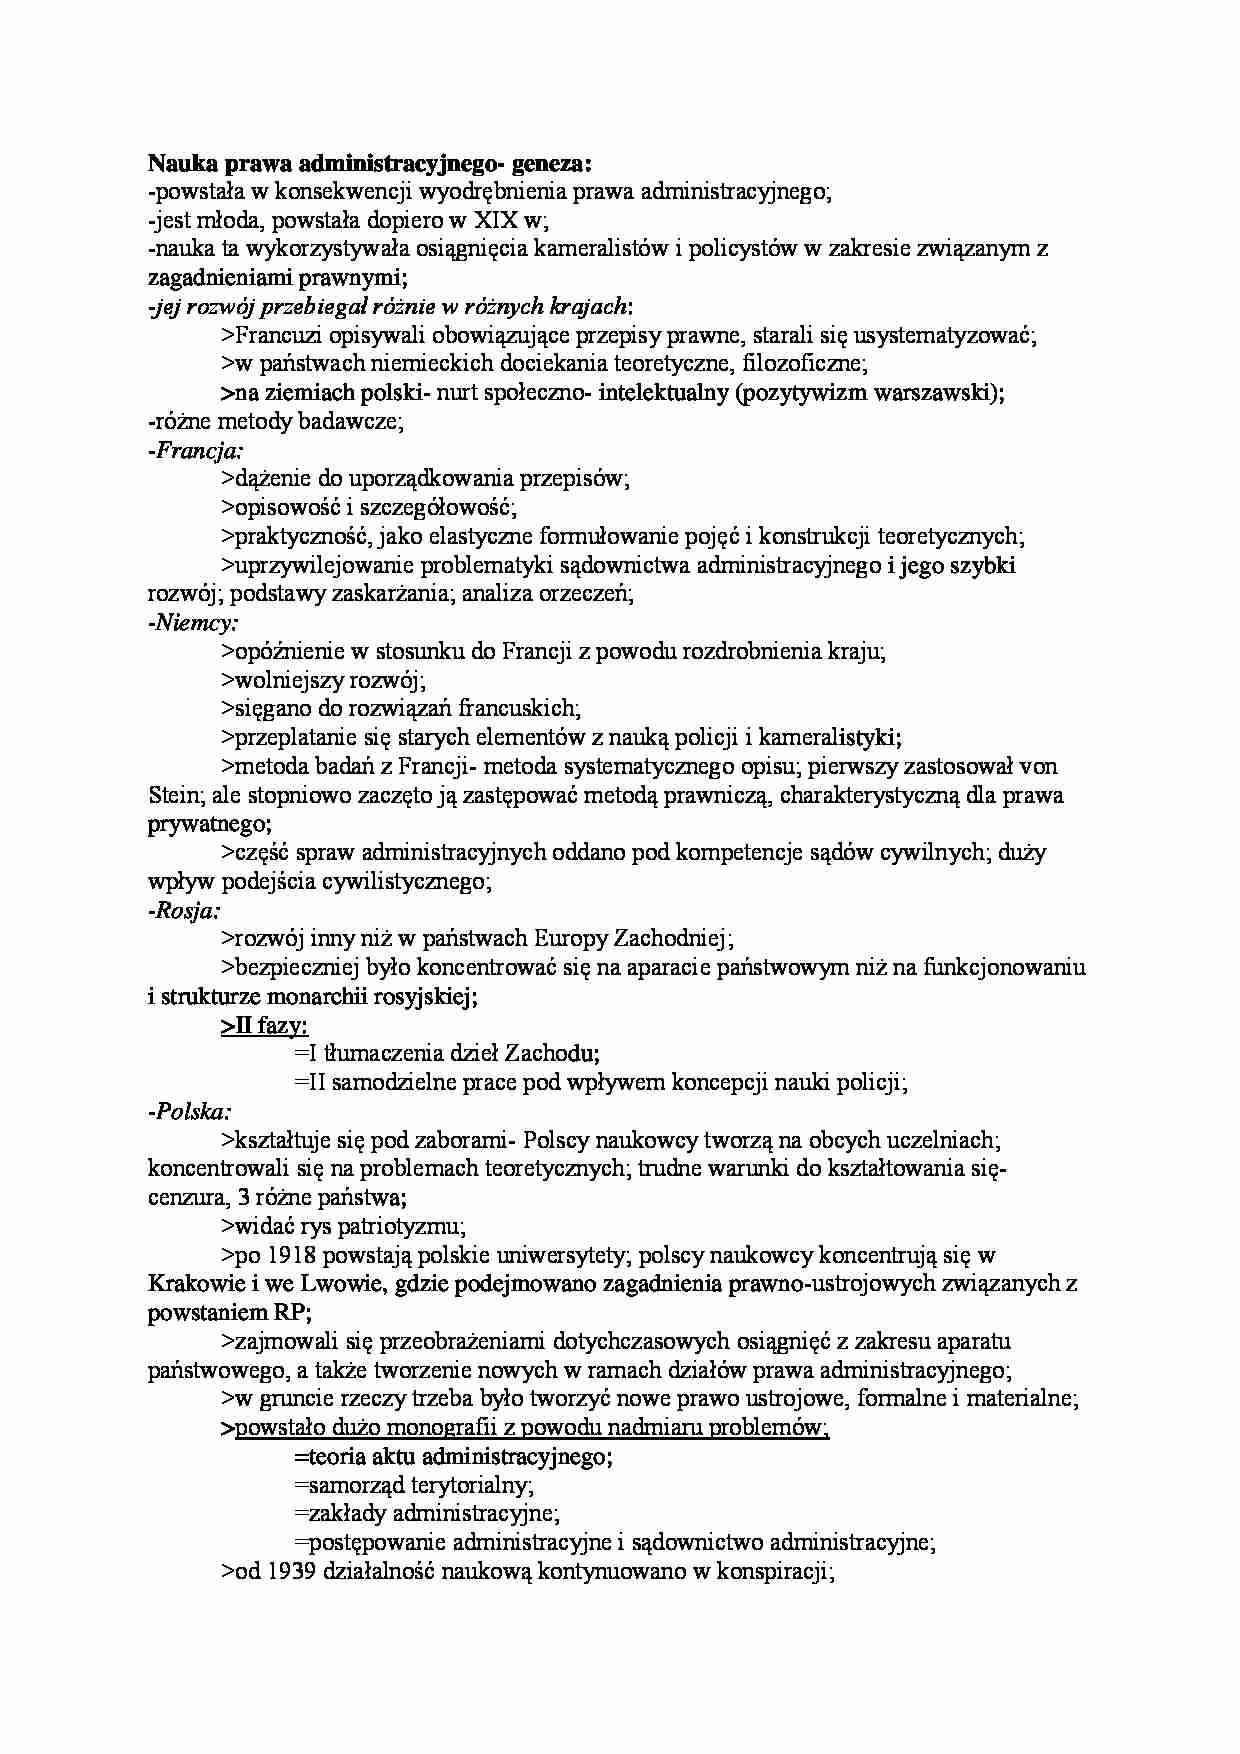 Nauki prawa administracyjnego - omówienie (I sem) - strona 1